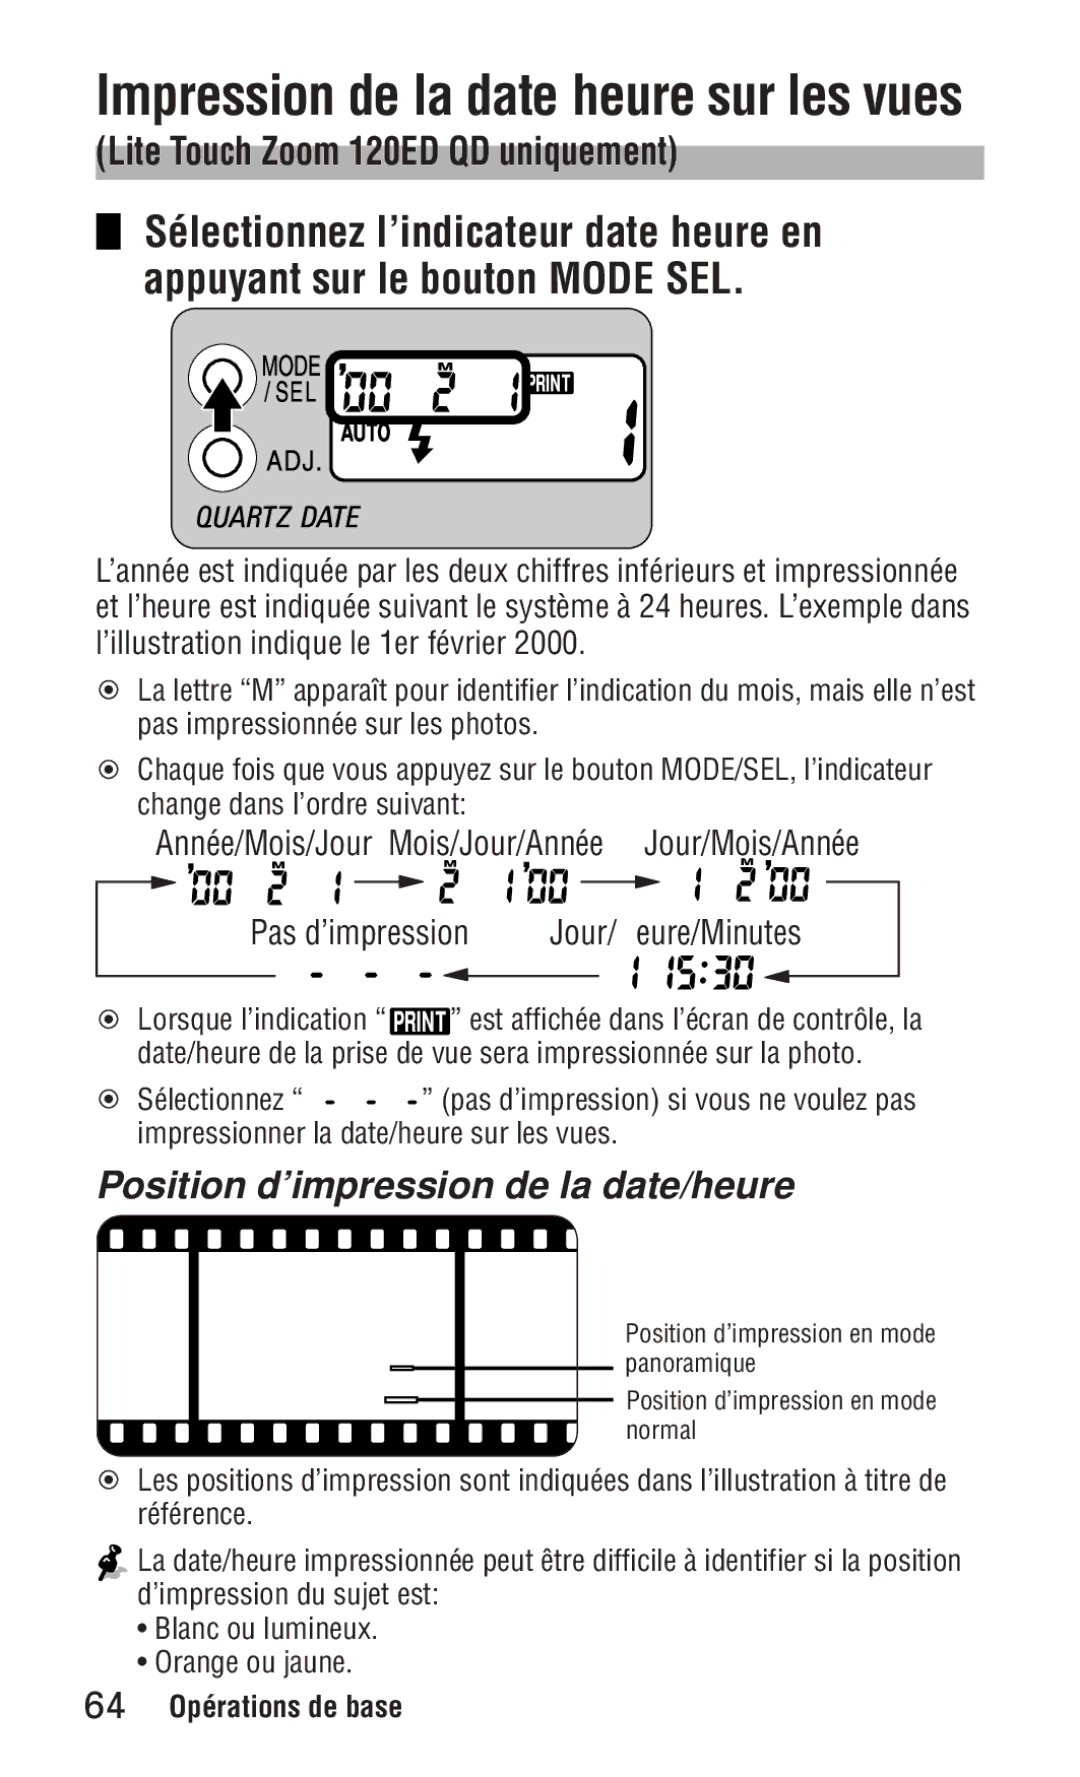 Nikon ED 120 instruction manual Impression de la date/heure sur les vues, Position d’impression de la date/heure 